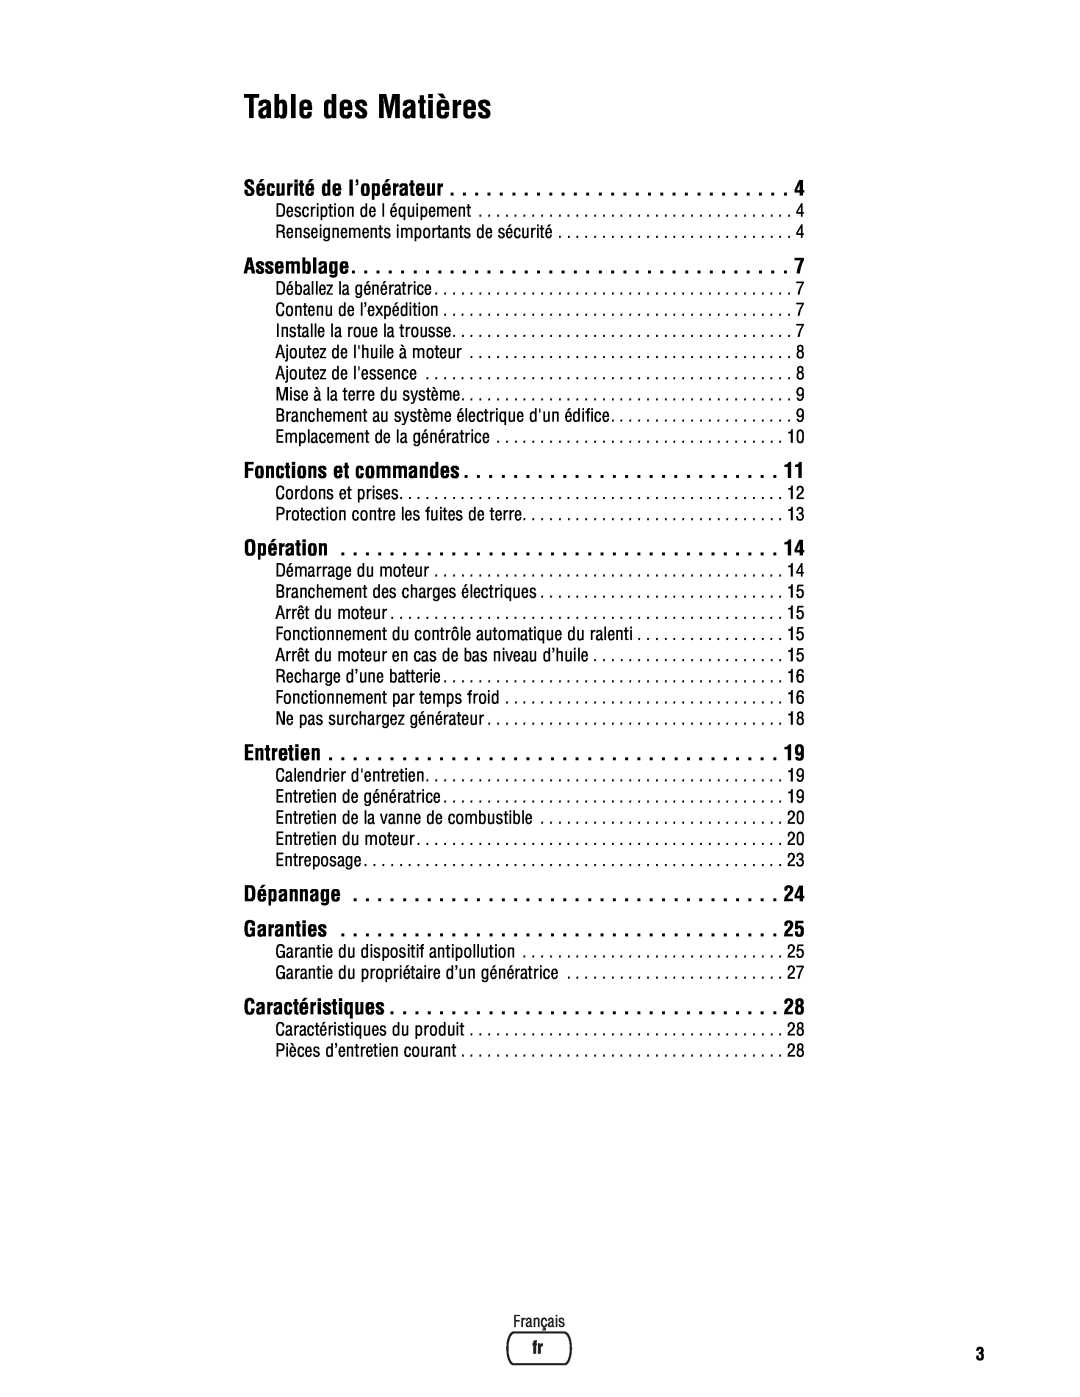 Briggs & Stratton PRO4000 manual Table des Matières, Sécurité de l’opérateur, Assemblage, Fonctions et commandes, Opération 